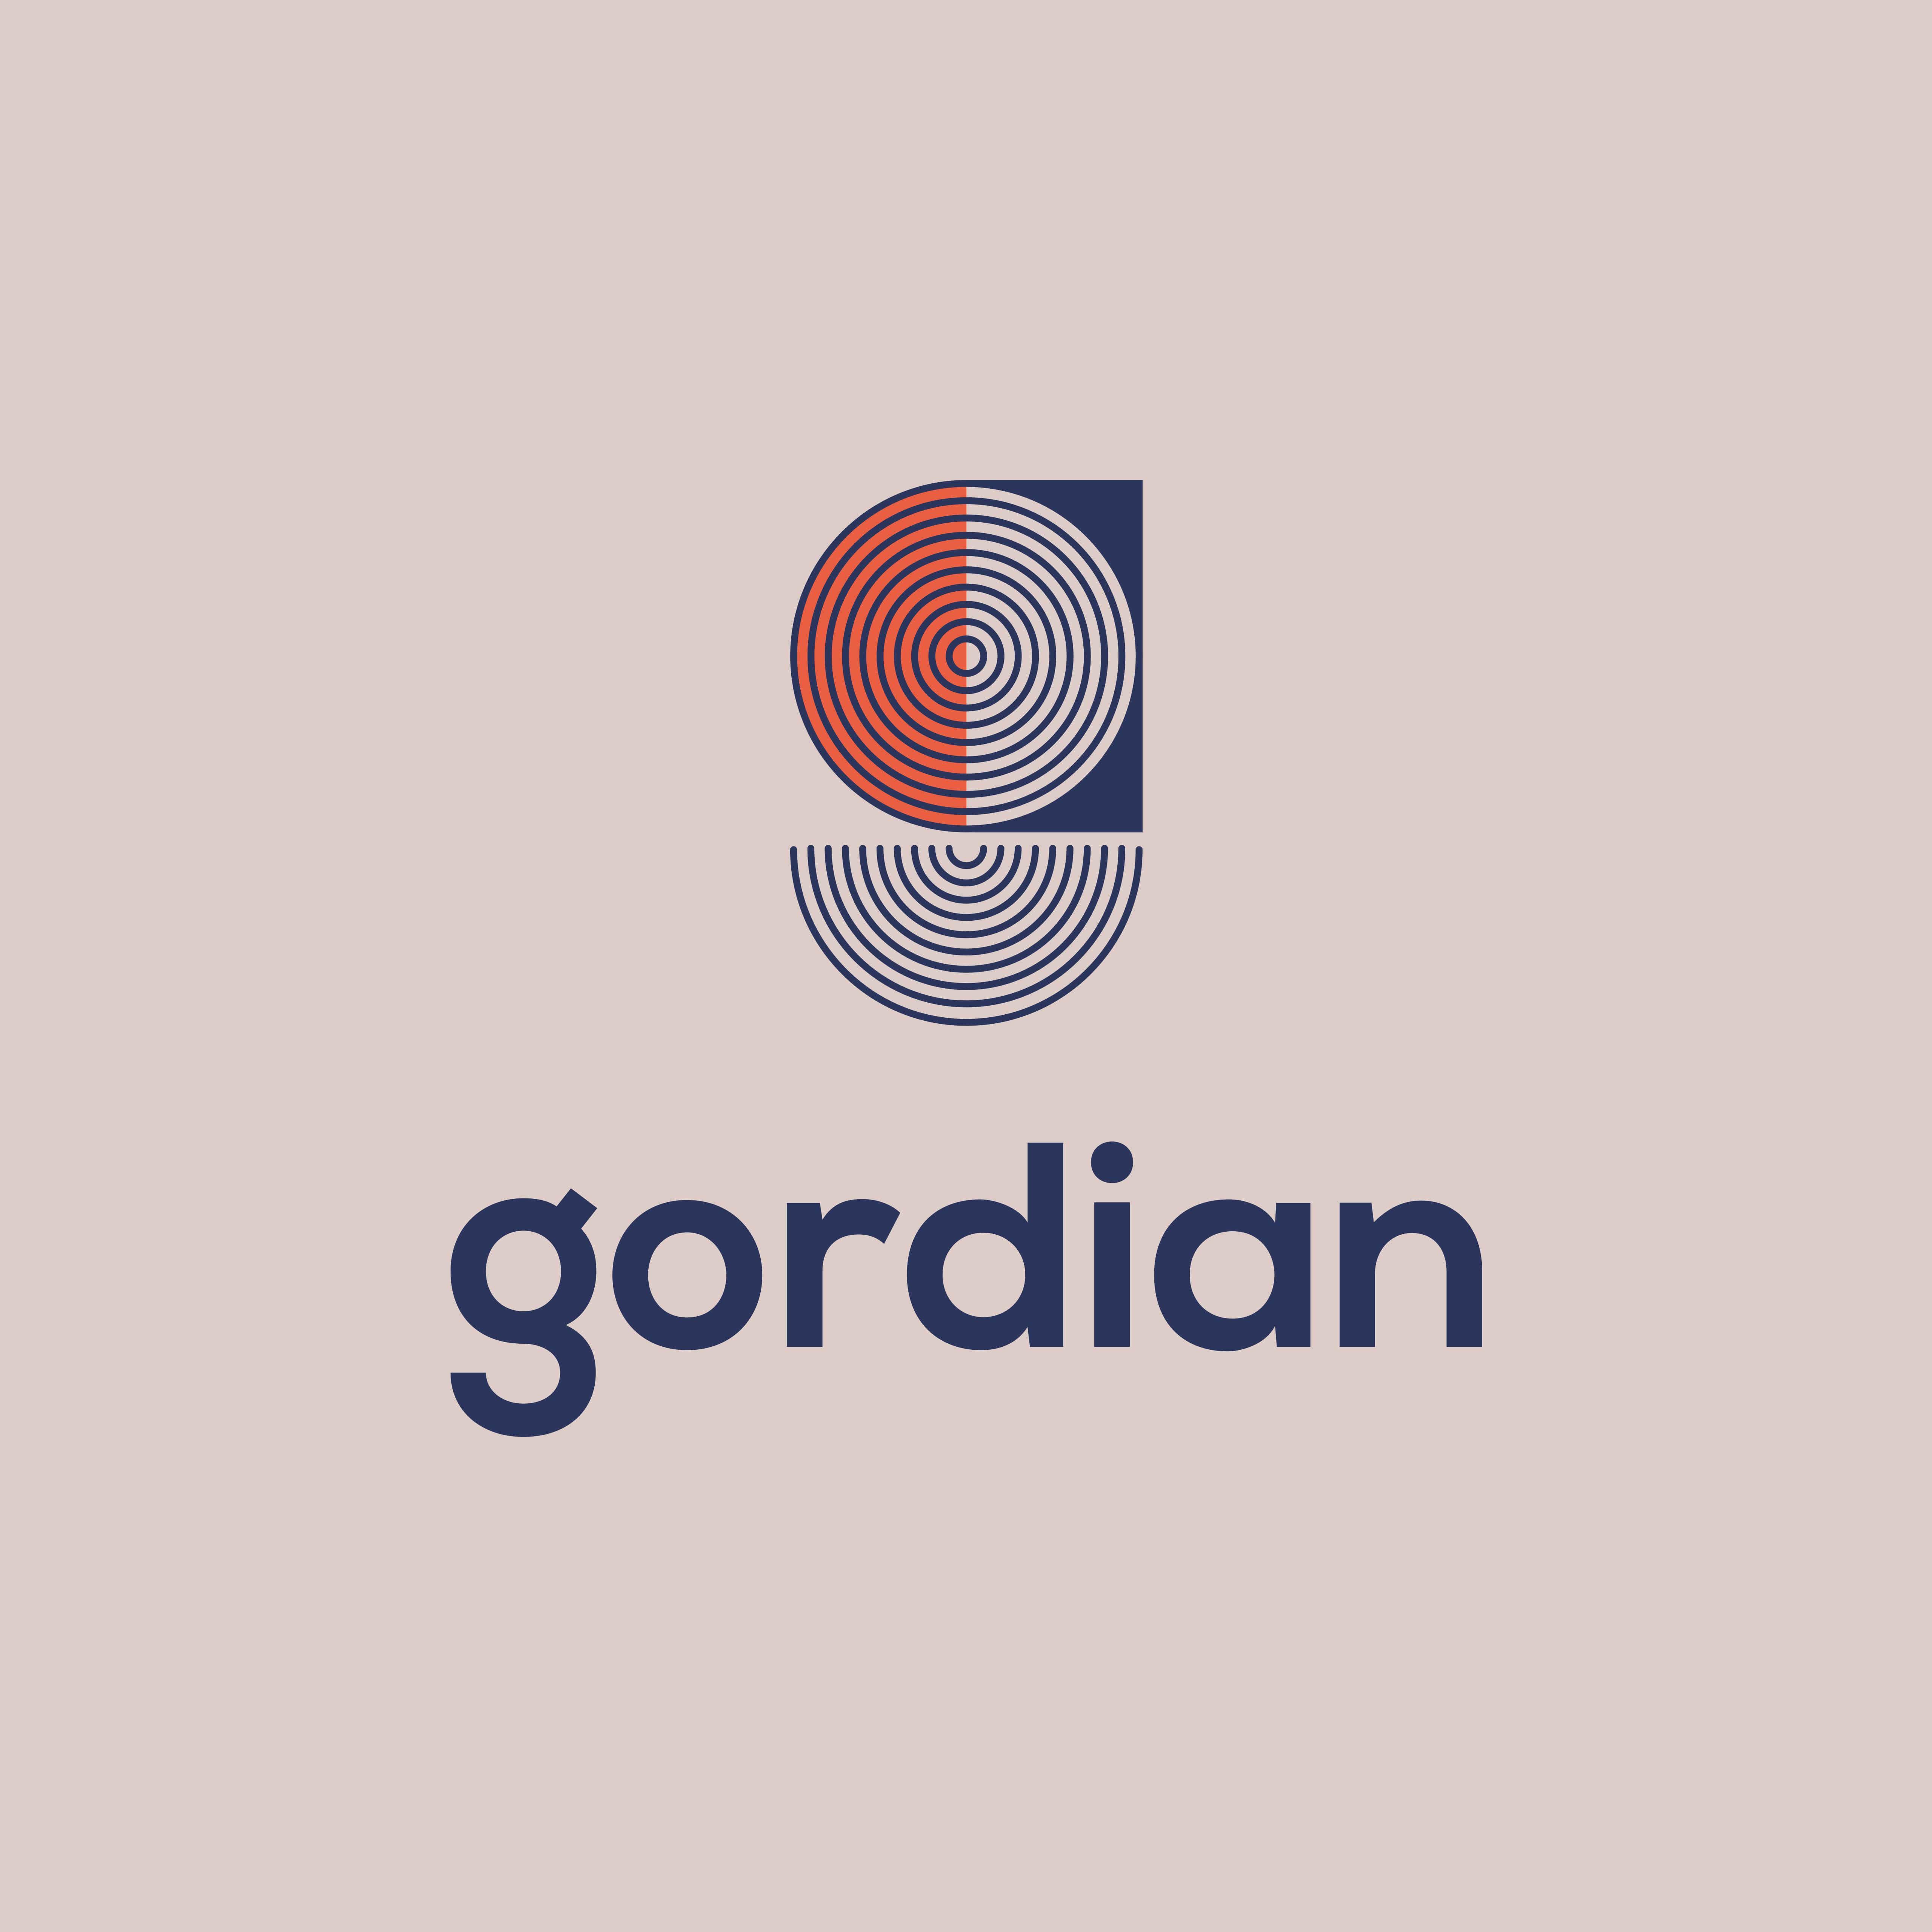 Gordian-2